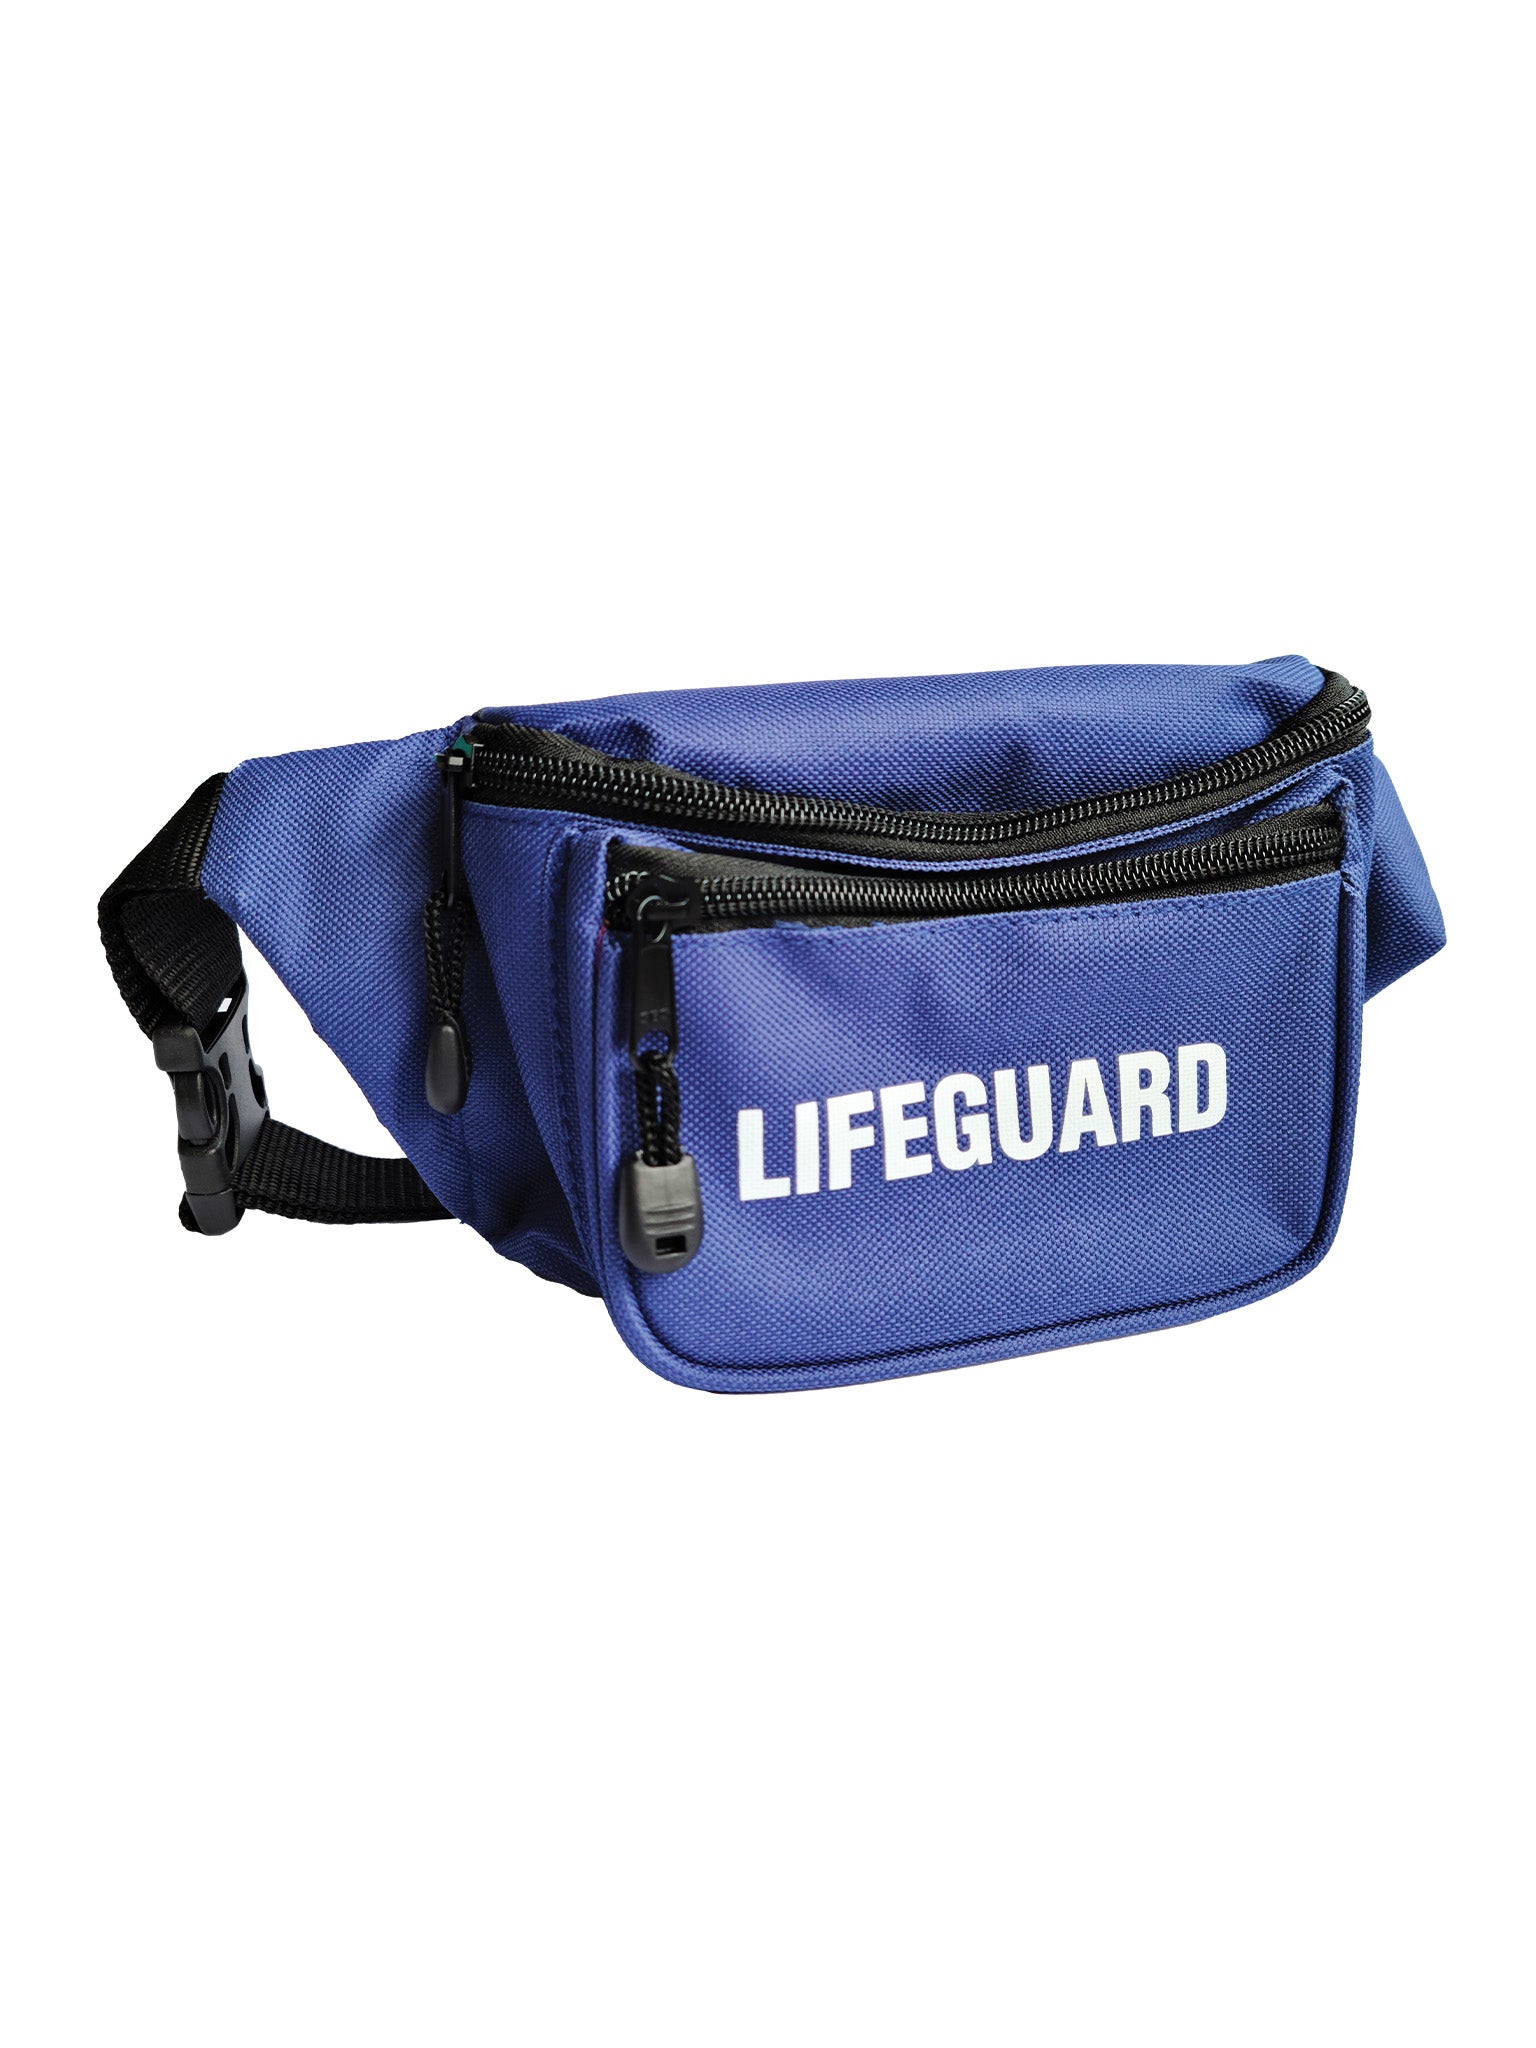 Navy Waist Pack &quot;Lifeguard&quot; - Navy